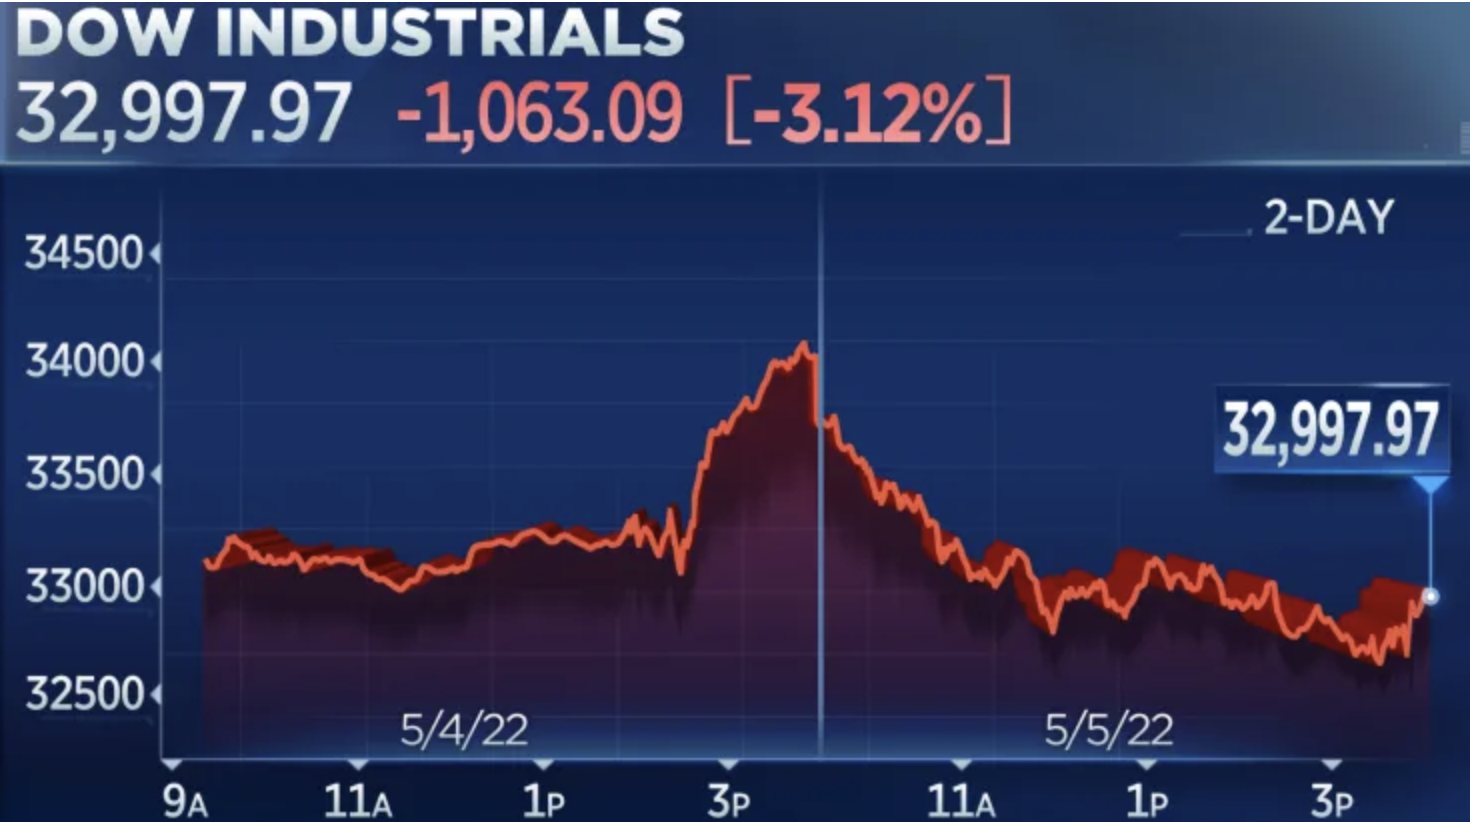 Diễn biến chỉ số Dow Jones trong hai phiên ngày 4-5/5 - Nguồn: CNBC.